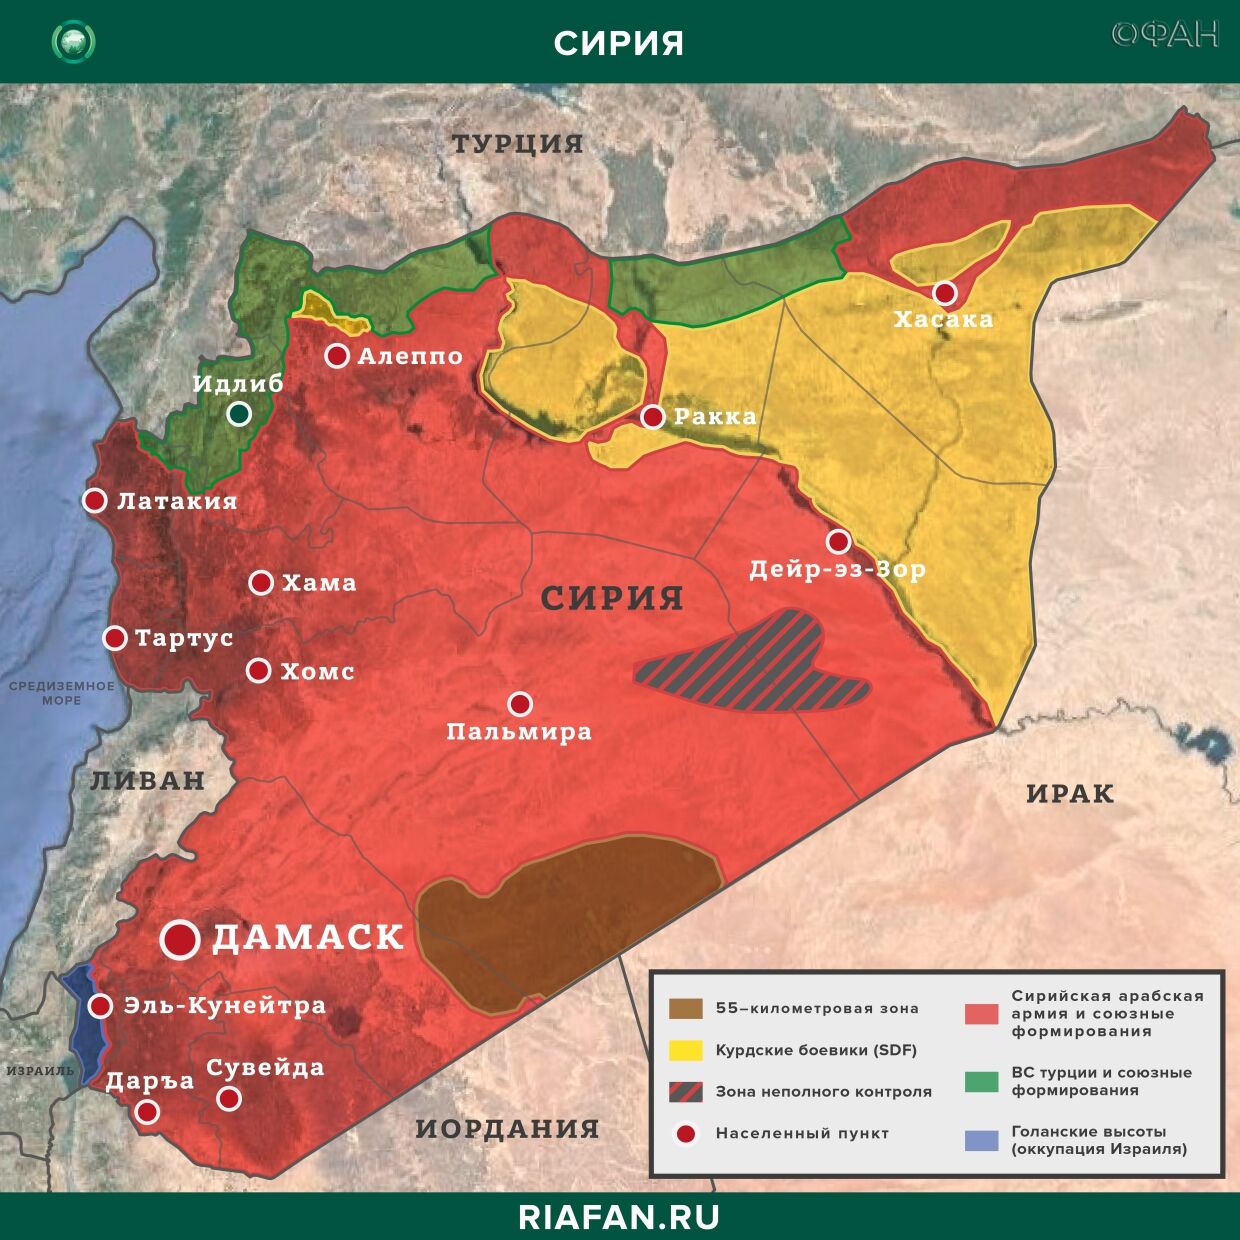 Nouvelles de Syrie 30 Mars 22.30: нападение боевиков в Даръа, ХТШ устраняет идейных противников в Идлибе